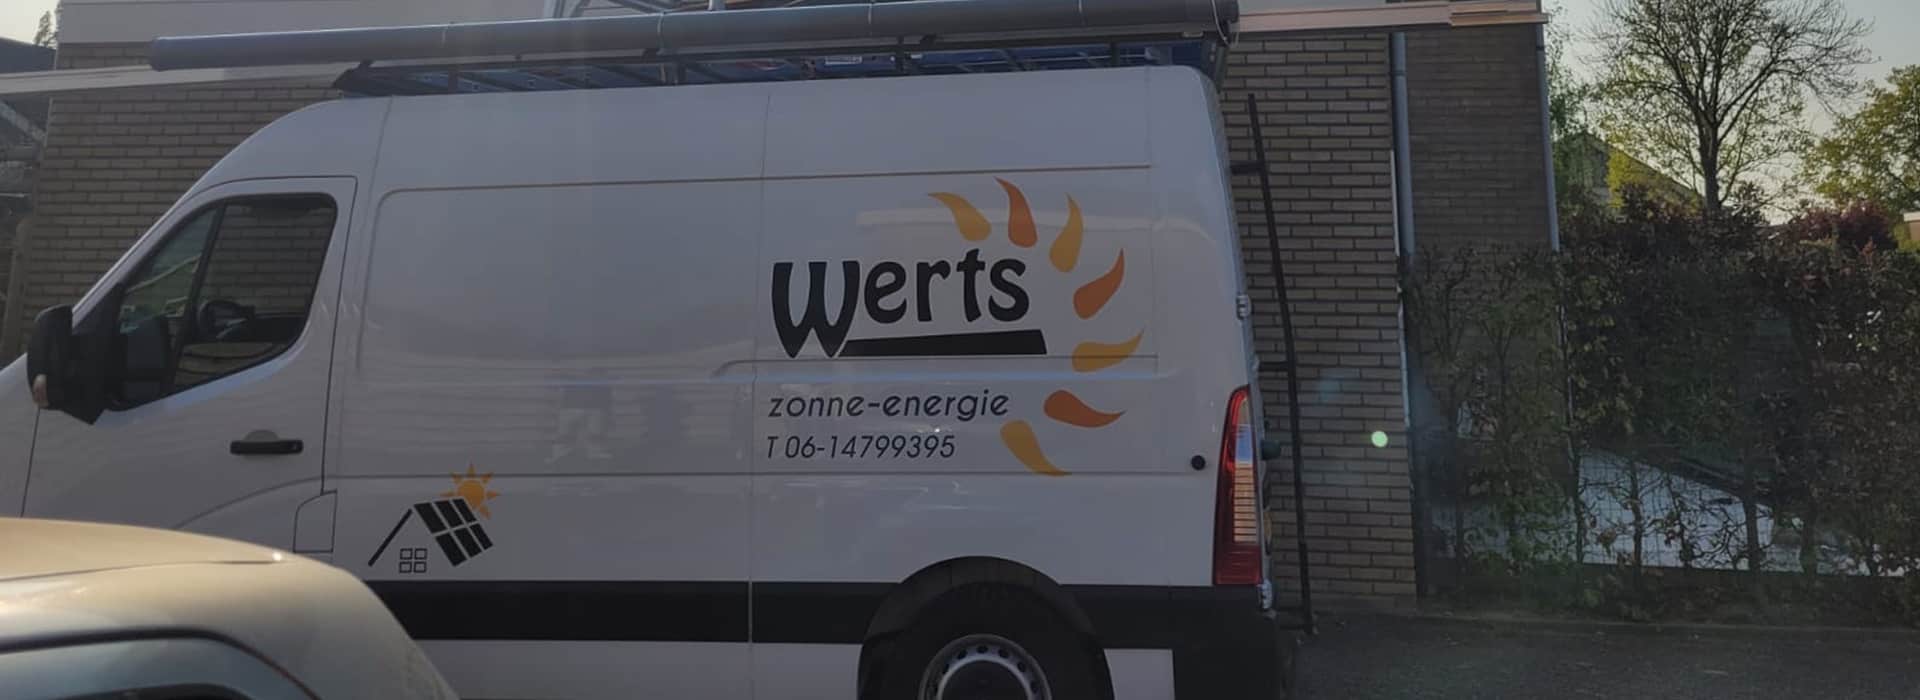 Werts bus